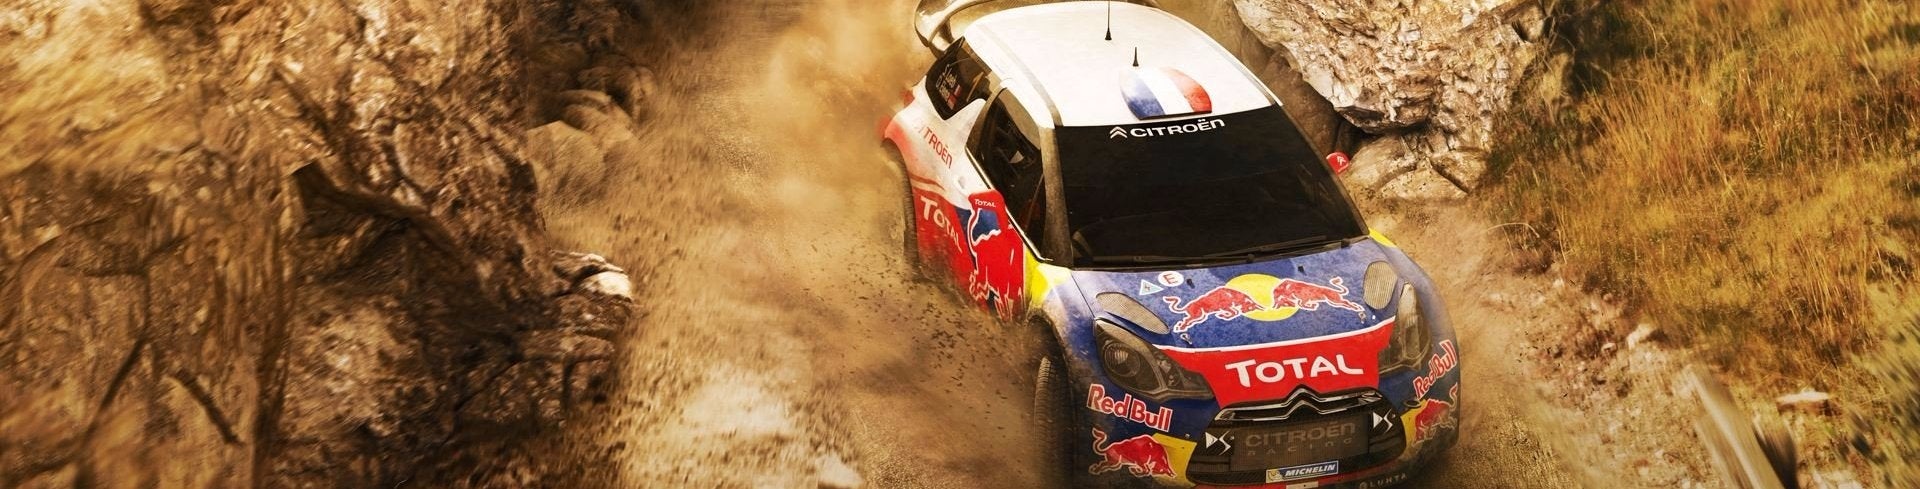 Obrazki dla Sebastien Loeb Rally Evo - Recenzja